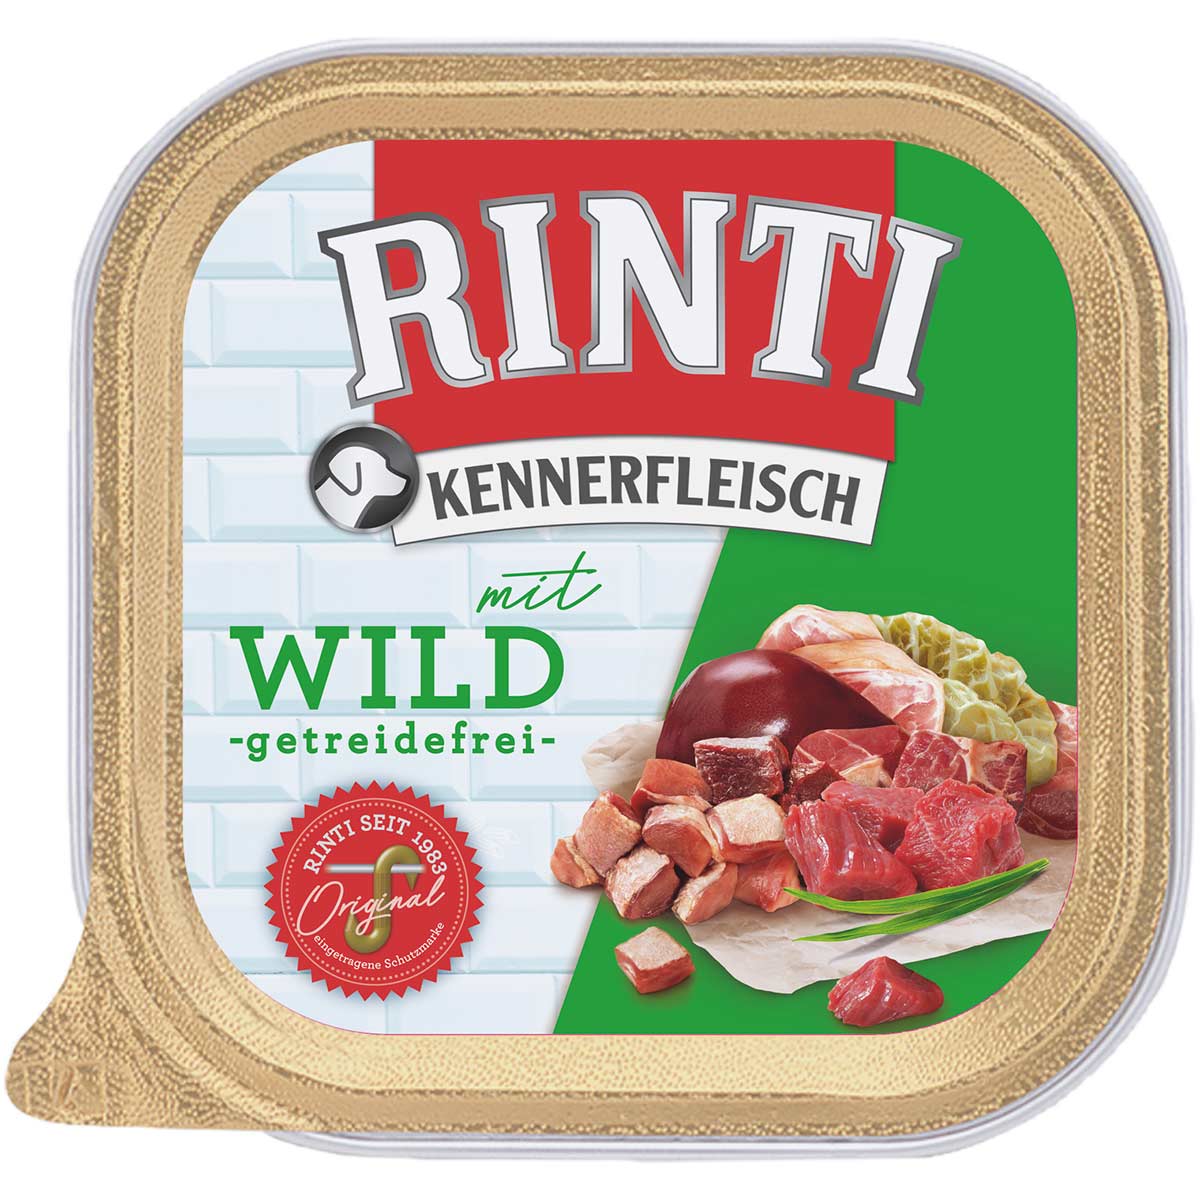 Rinti Kennerfleisch mit Wild 18x300g